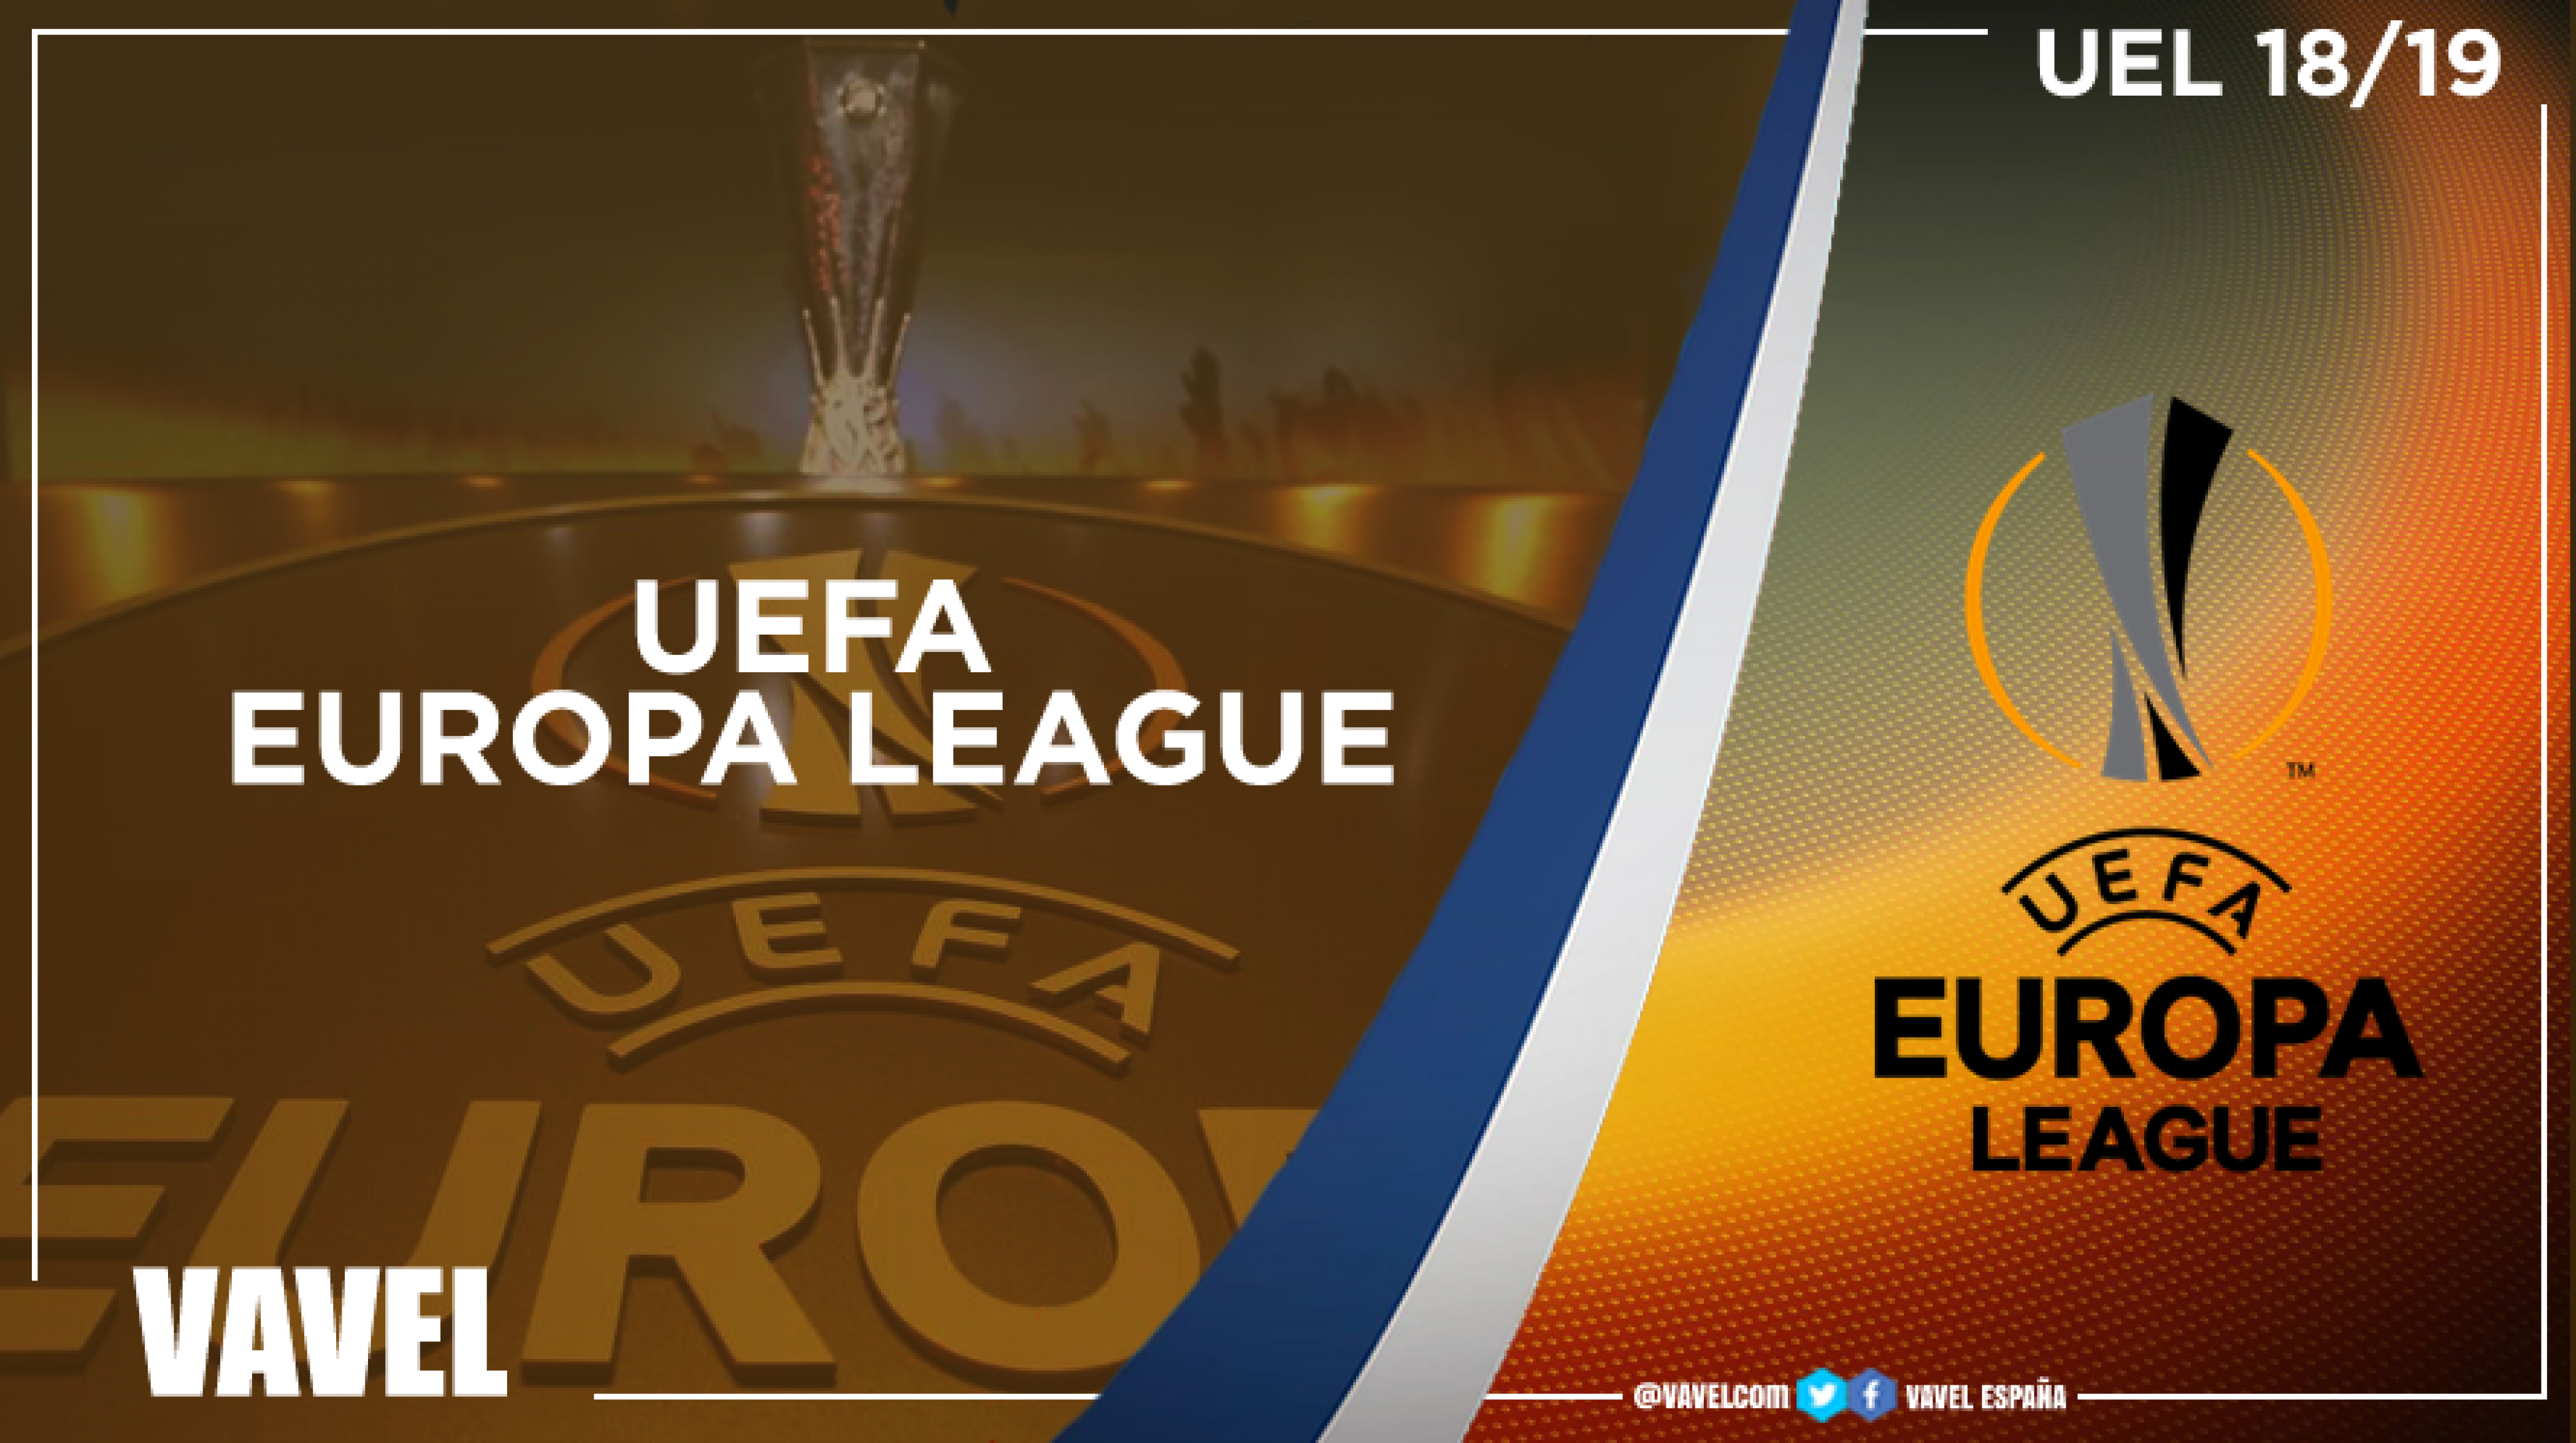 Guía VAVEL UEFA Europa League 2018/19: una competición para valientes